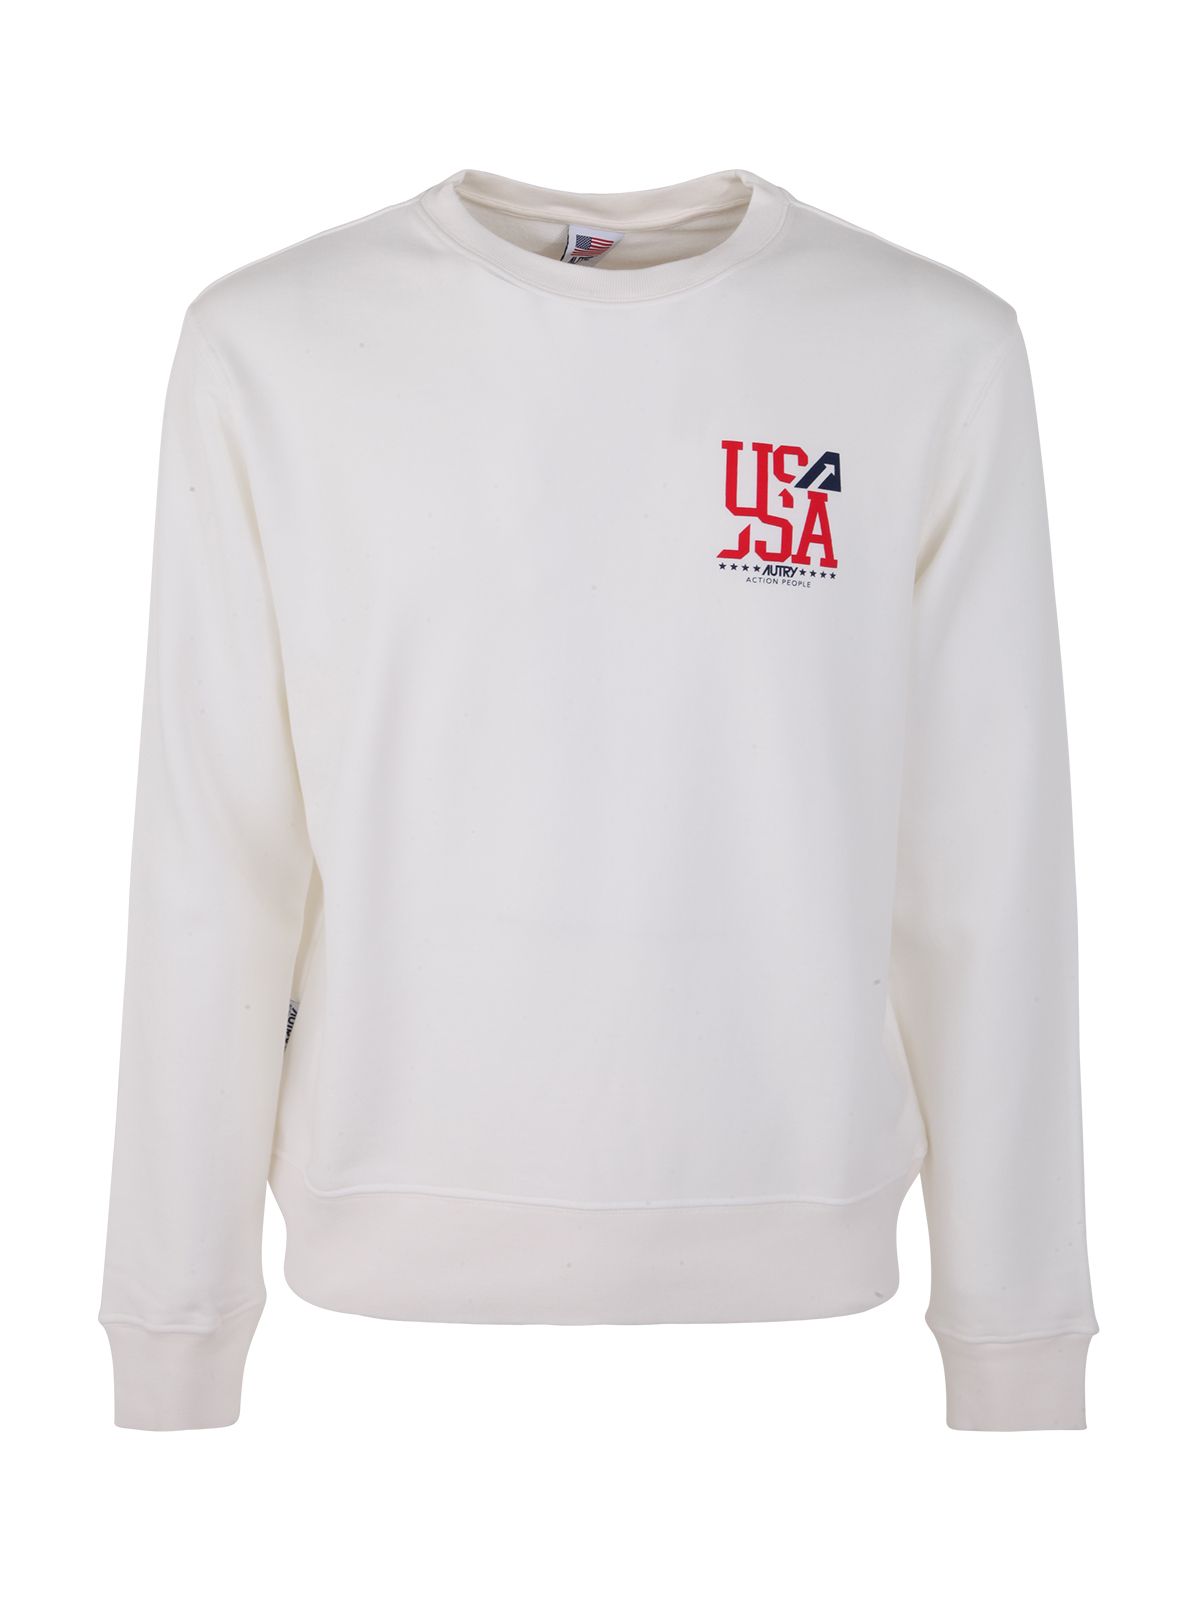 Shop Autry Crew Neck Iconic White Sweatshirt